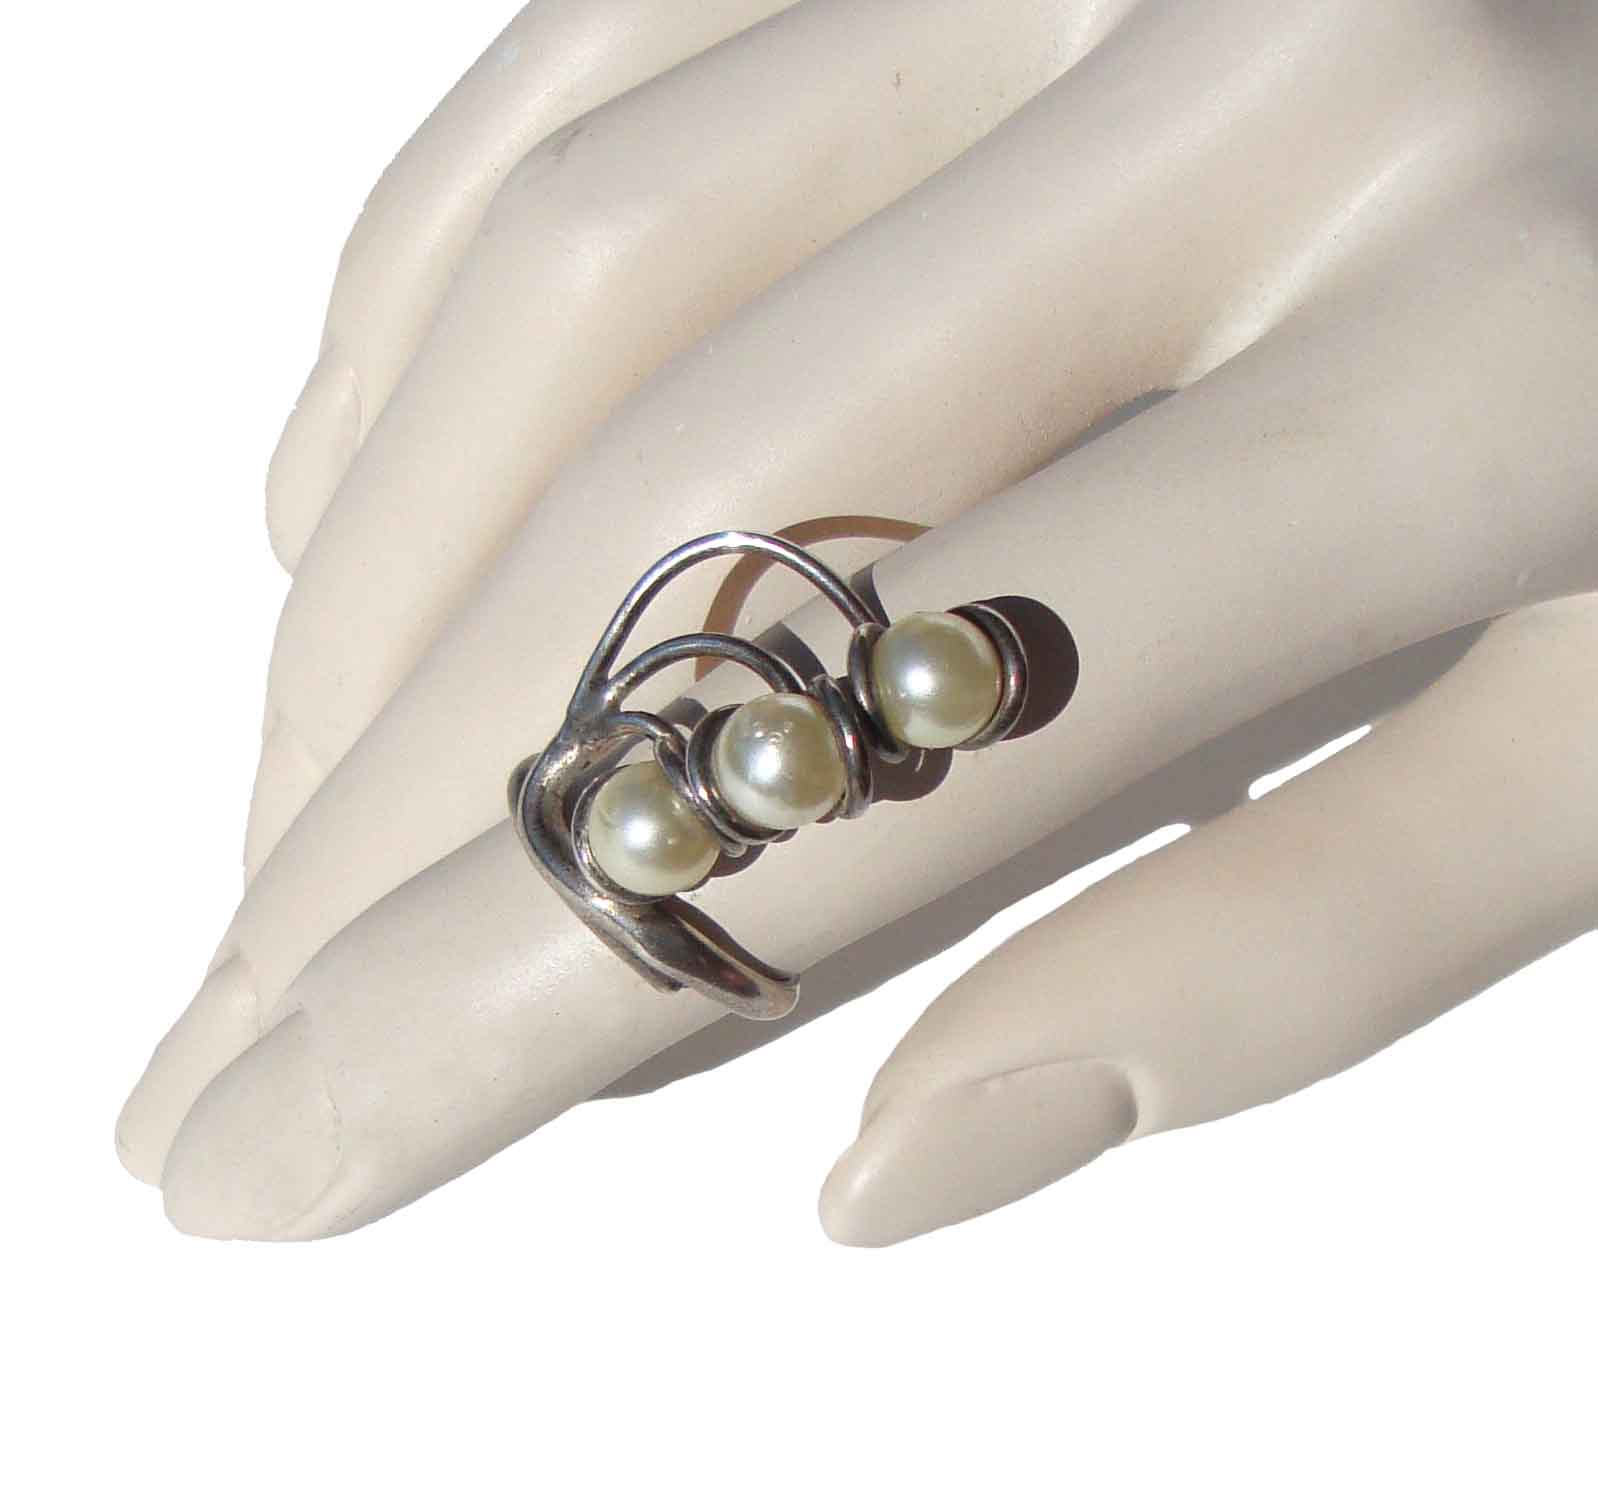 Vintage Modernist Ring Sterling & Pearls Adjustable Sz 5